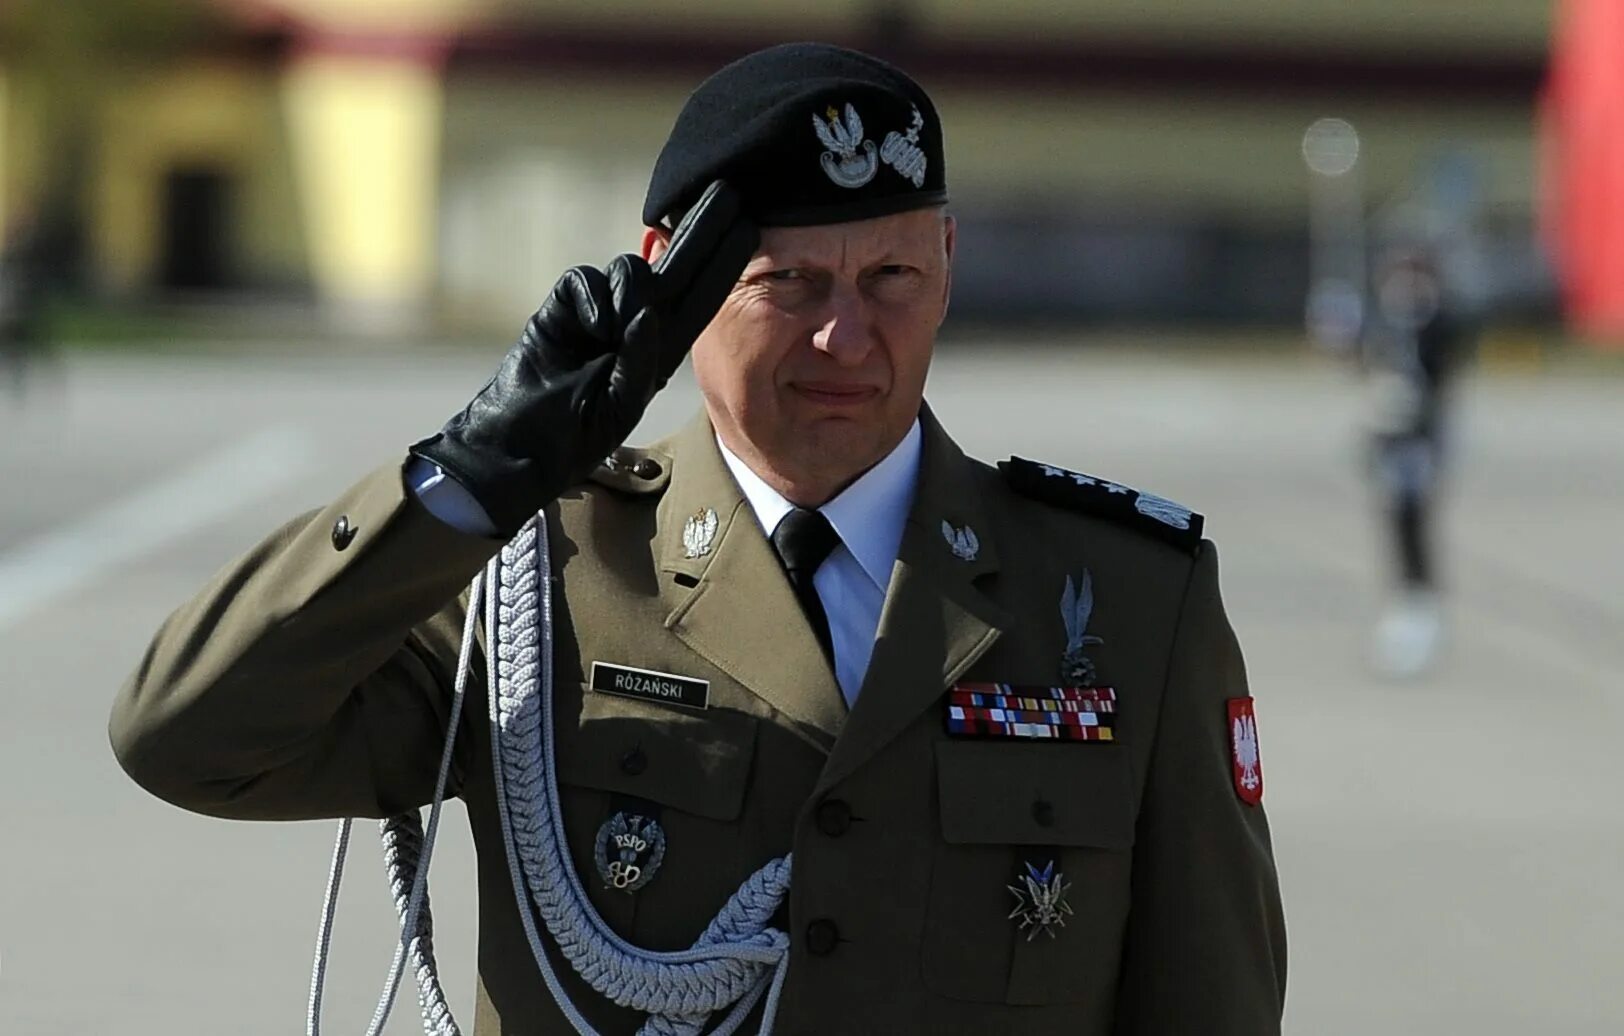 Польский генерал Ружаньский. Берлинг генерал Польши.